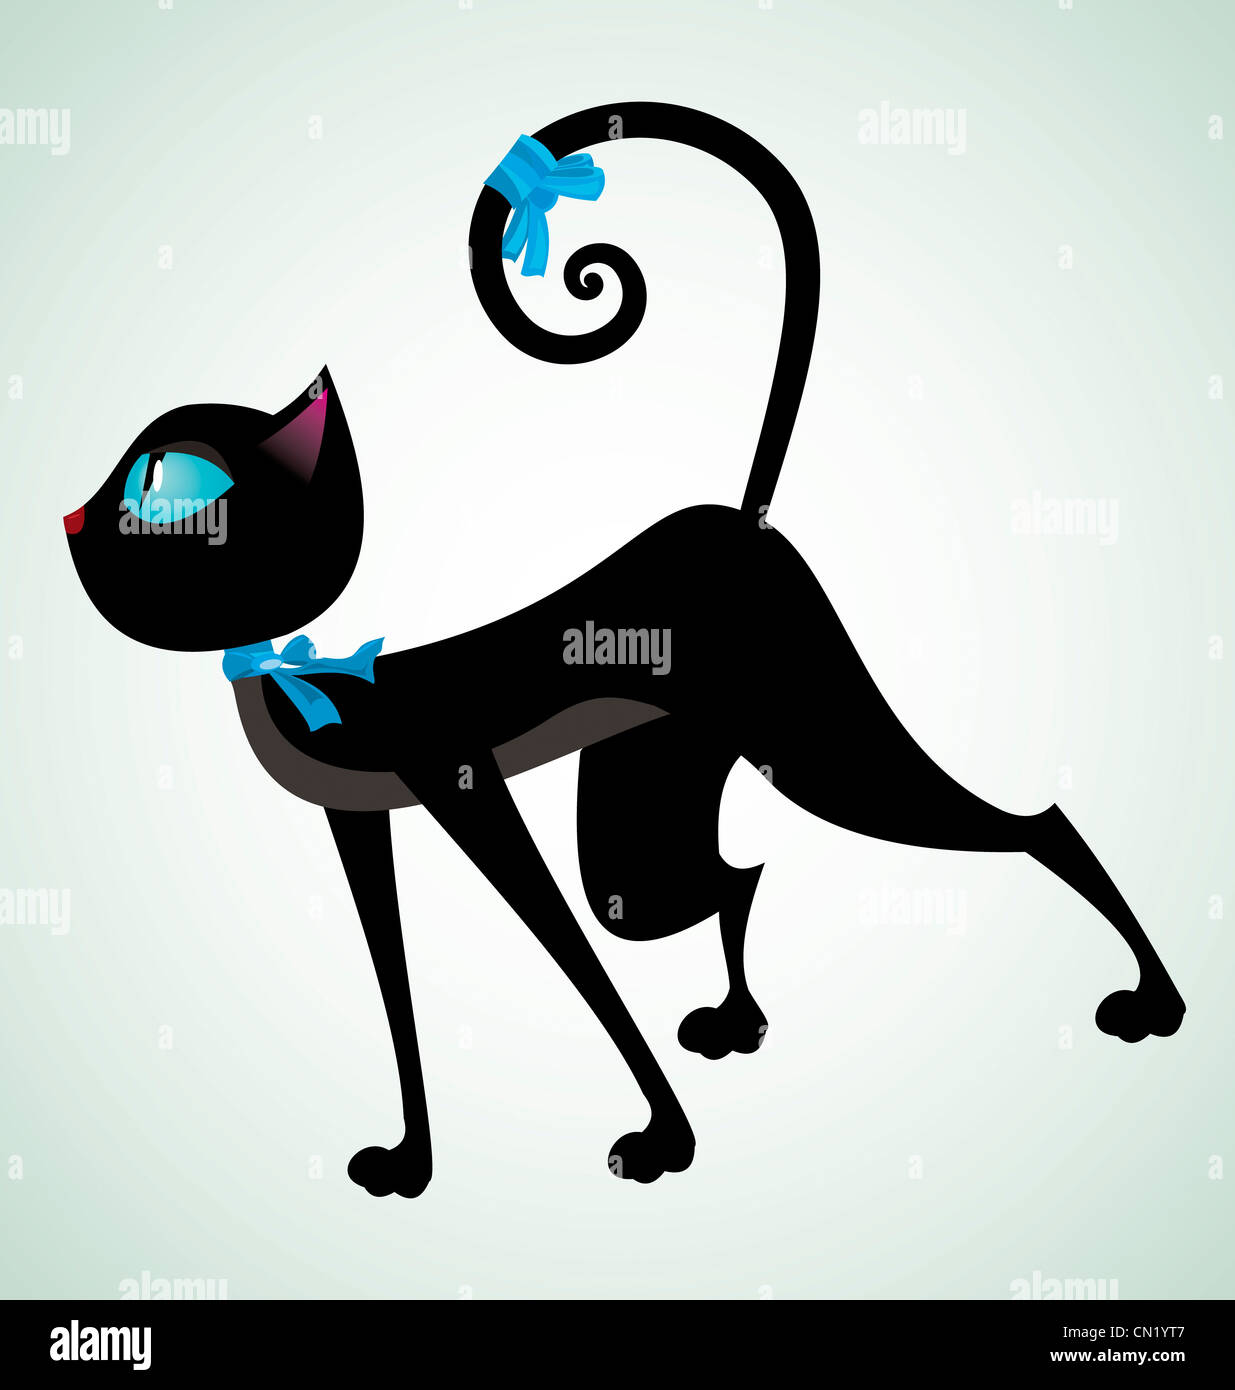 Vector illustration d'un chat noir avec ruban bleu sur le cou Banque D'Images